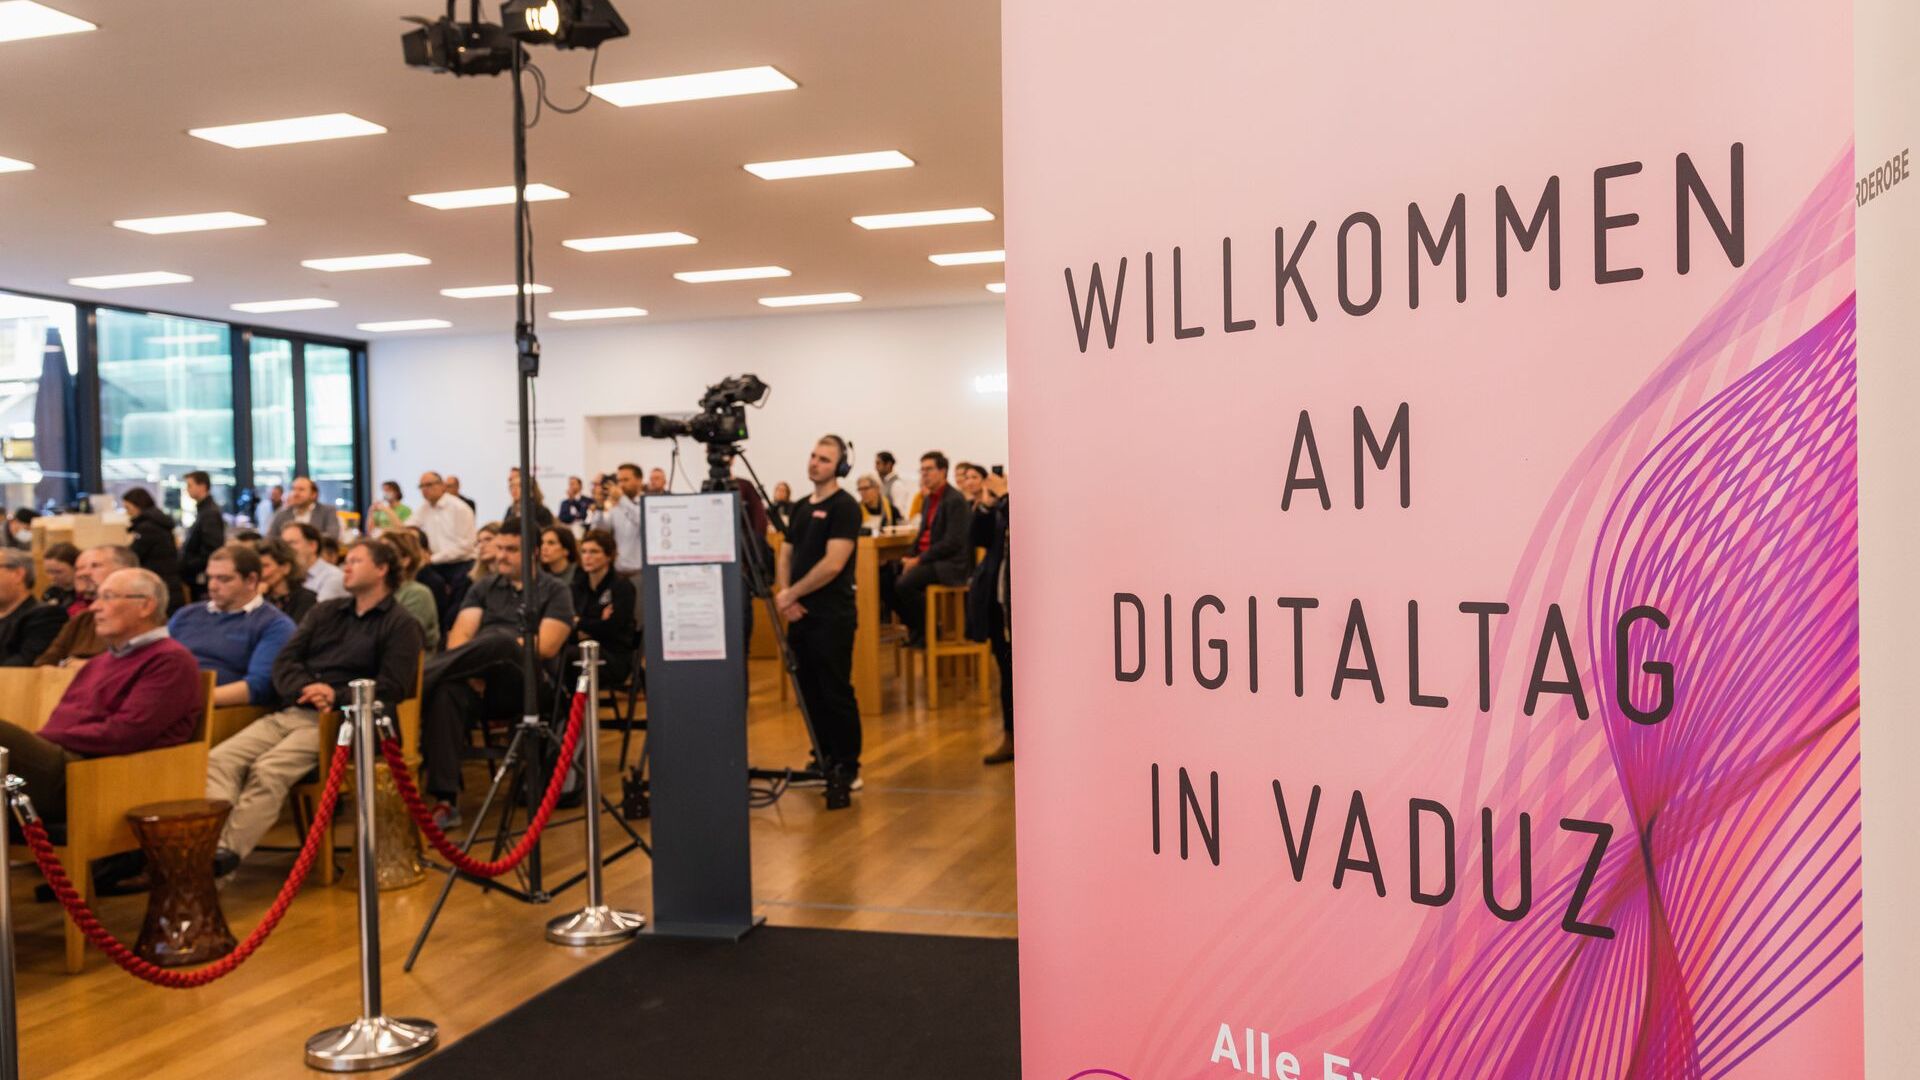 El "Digitaltag Vaduz" fue recibido por el Kunstmuseum de la capital del Principado de Liechtenstein el sábado 6 de noviembre de 2021.